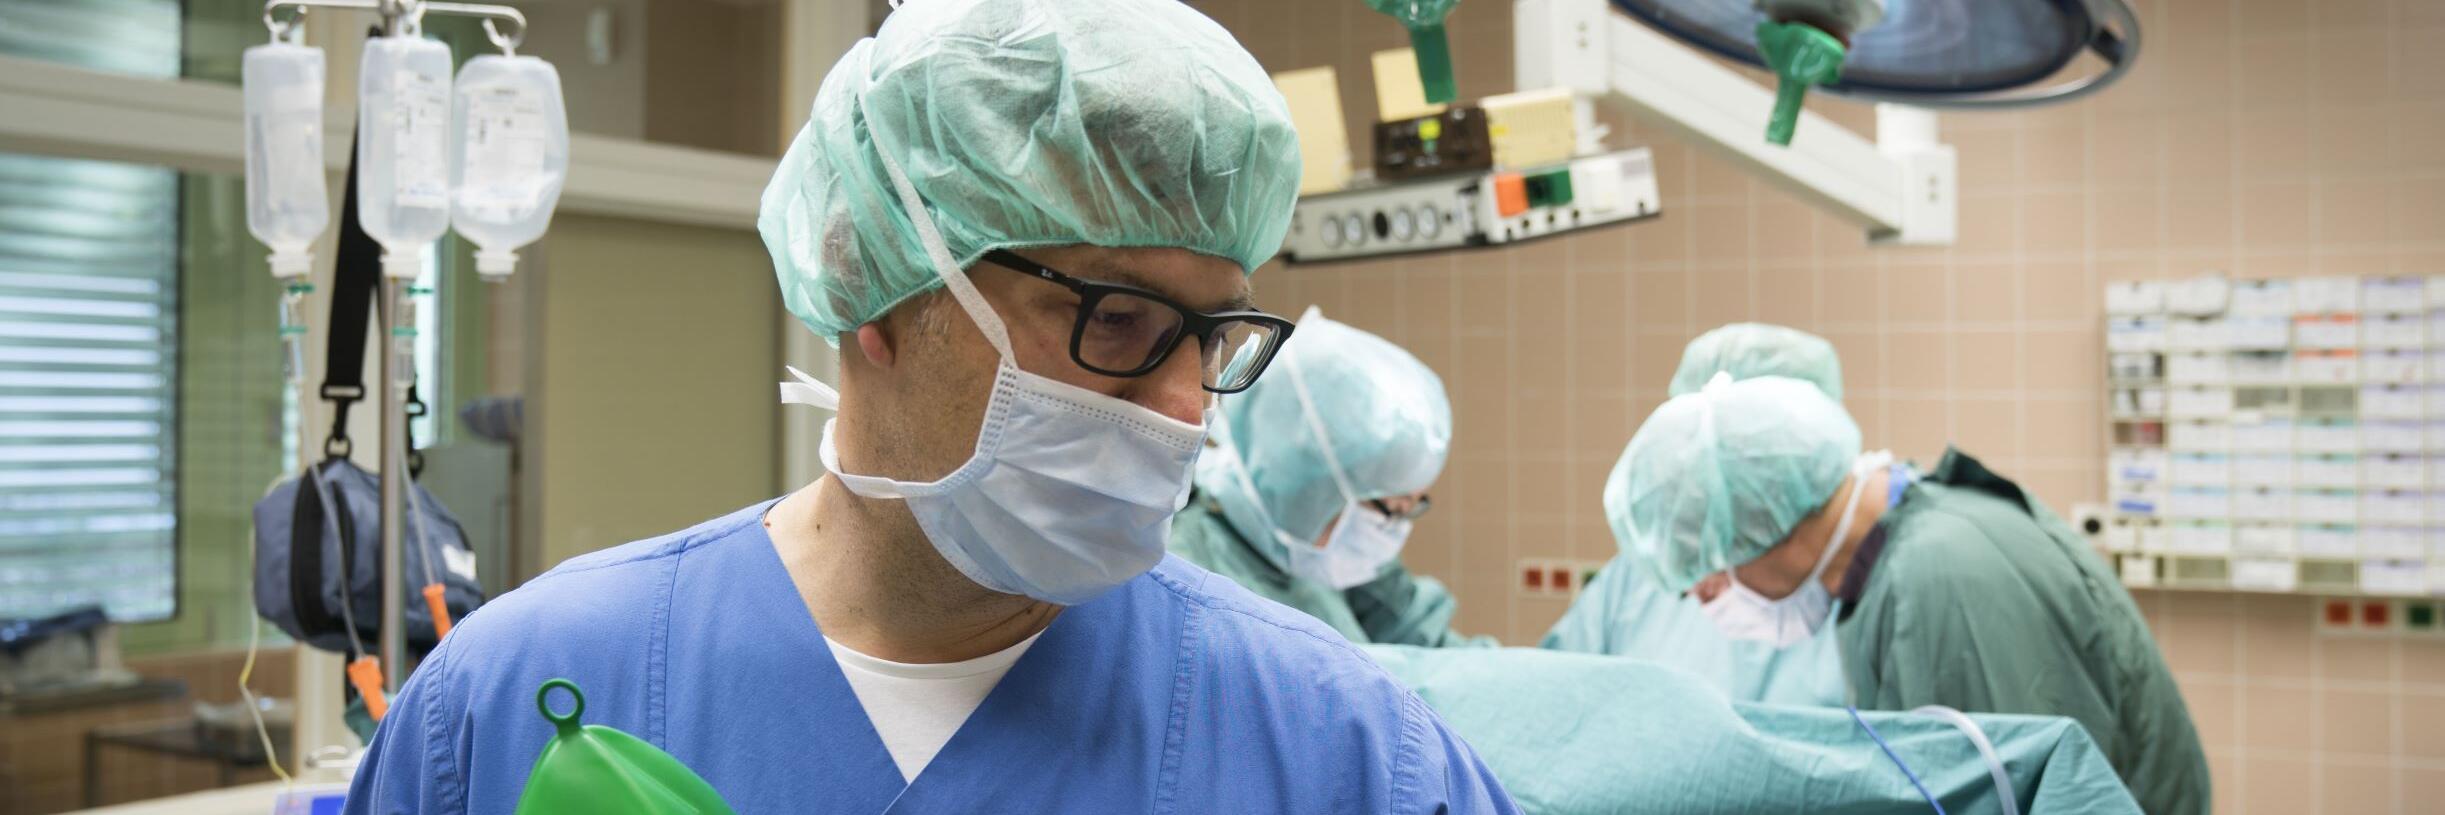 Arzt im OP-Saal bei einer Operation